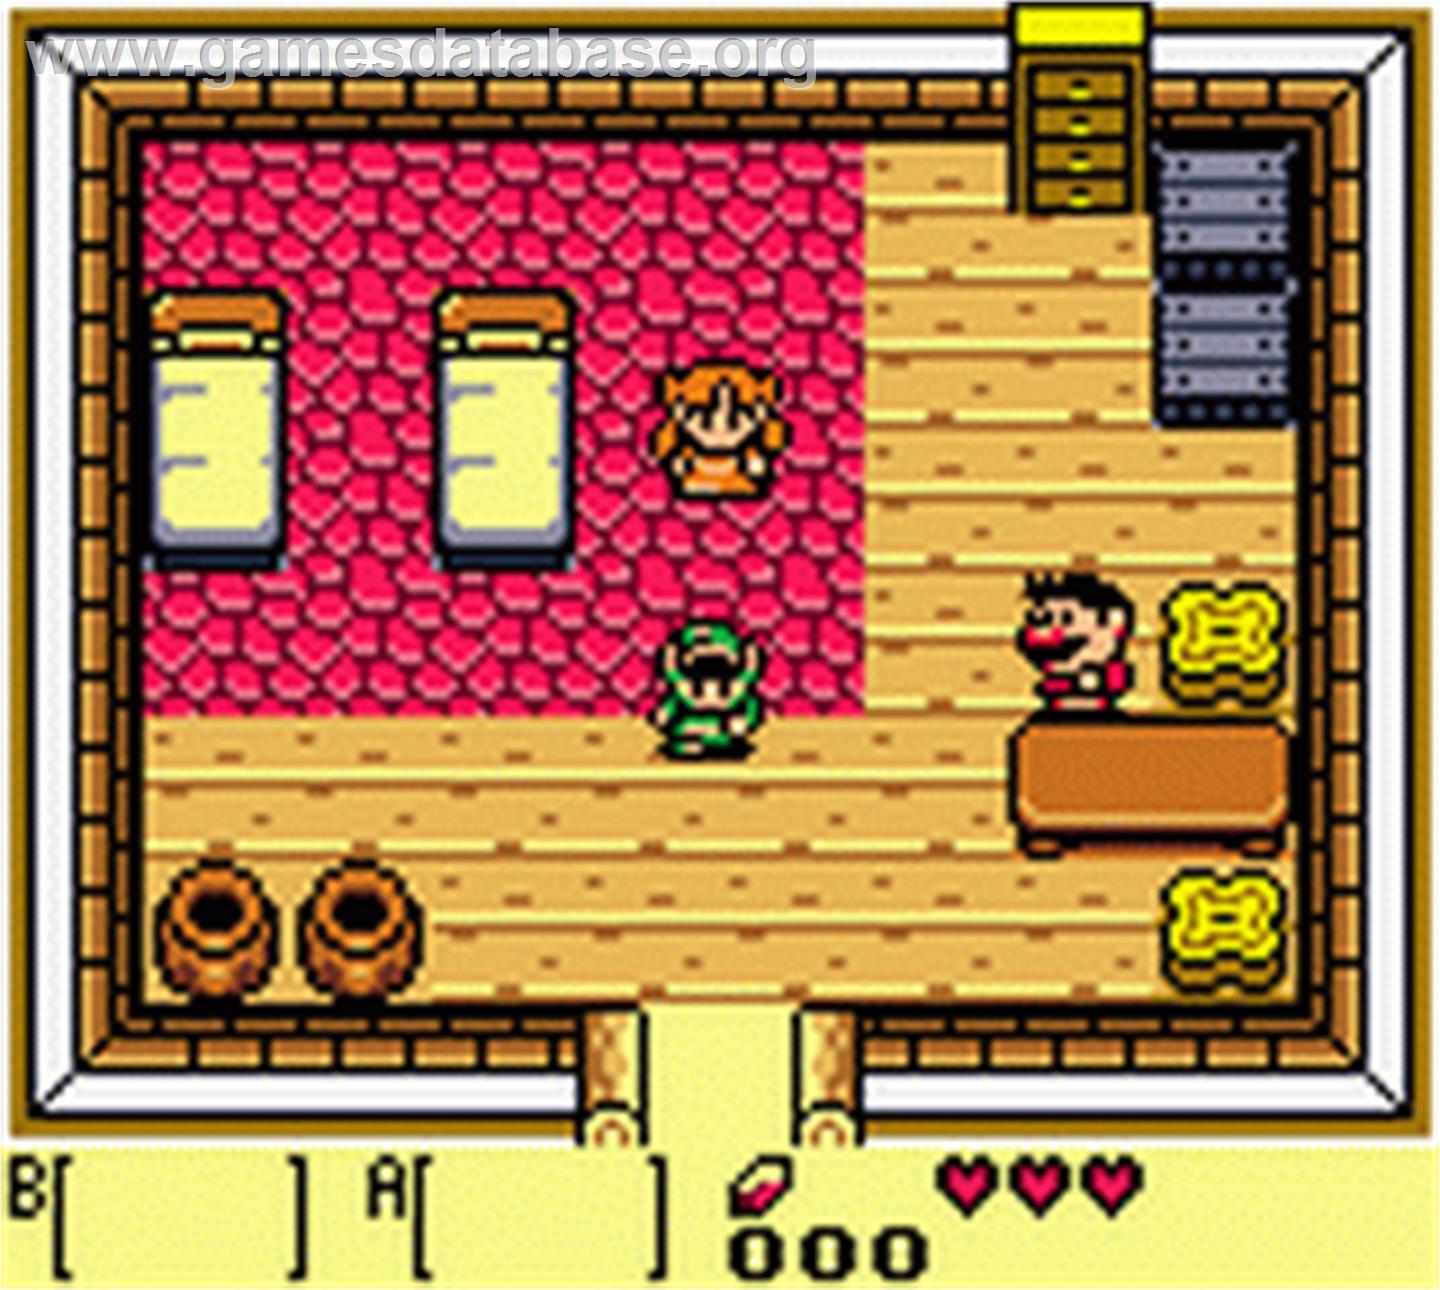 Legend of Zelda: Link's Awakening DX - Nintendo Game Boy Color - Artwork - In Game